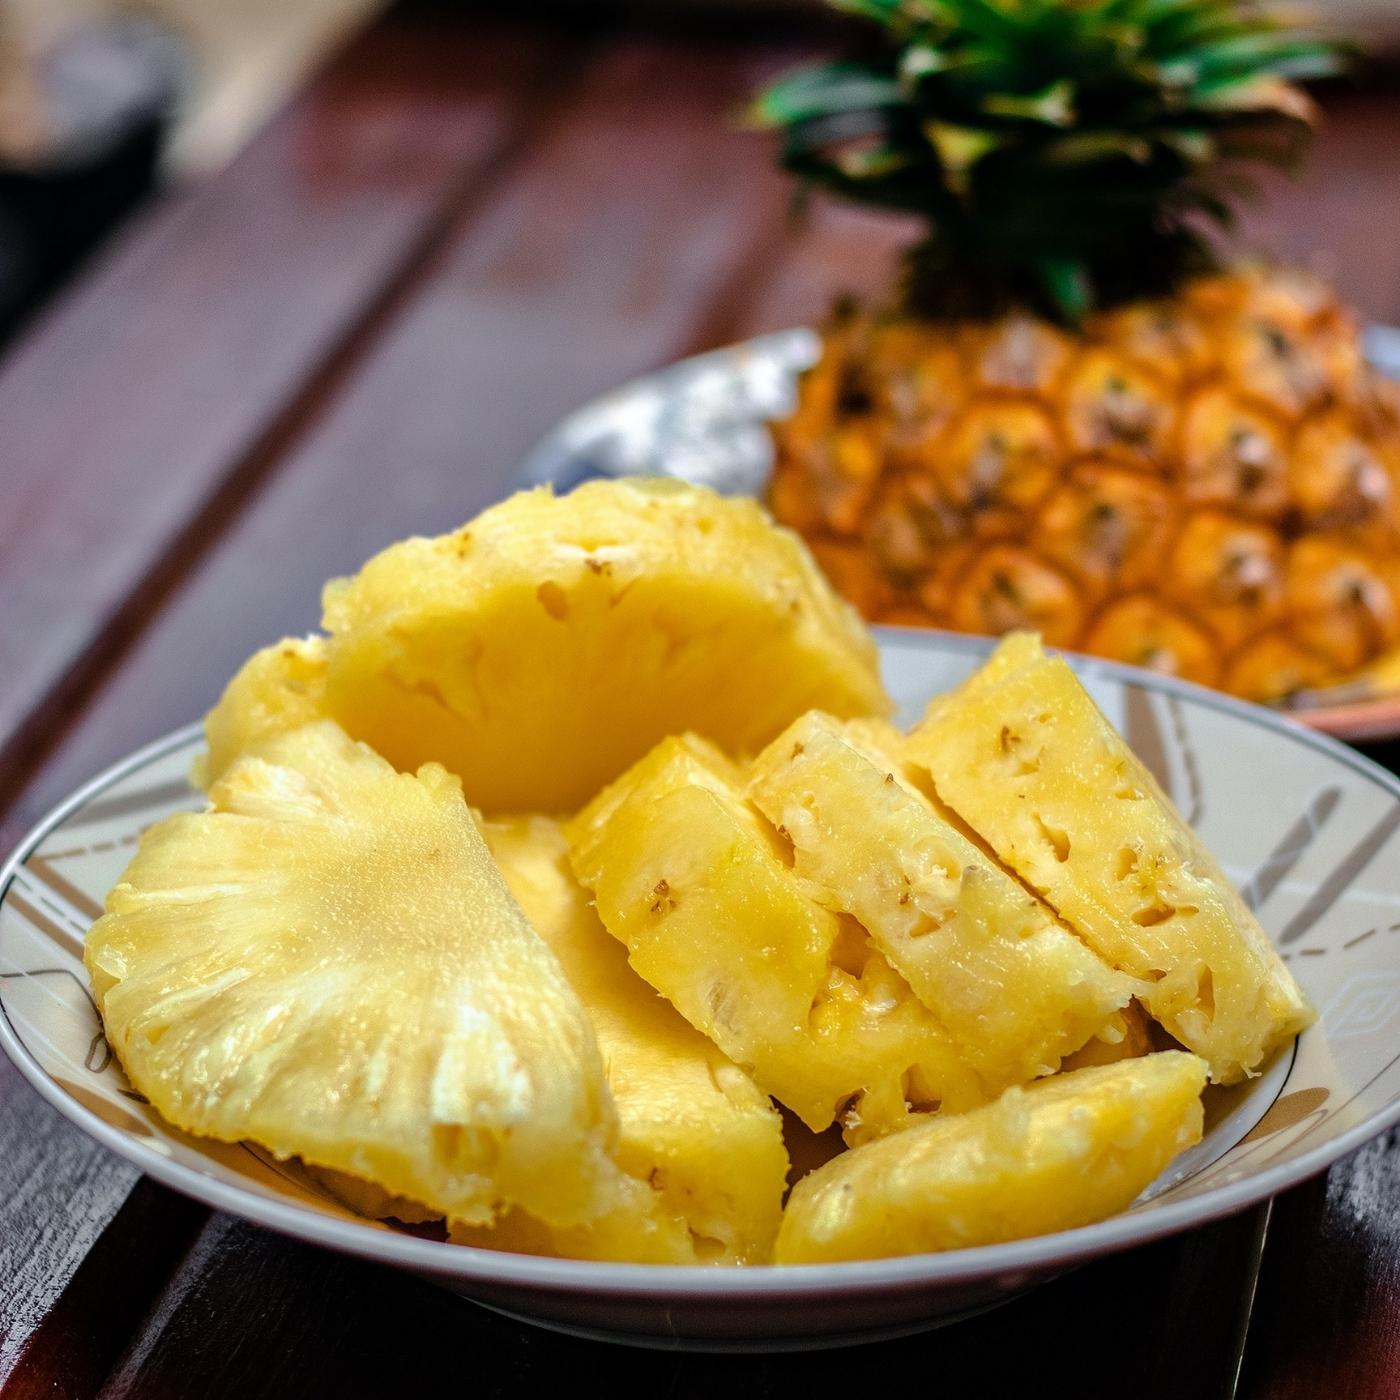 sliced-pineapple-bowl.jpg